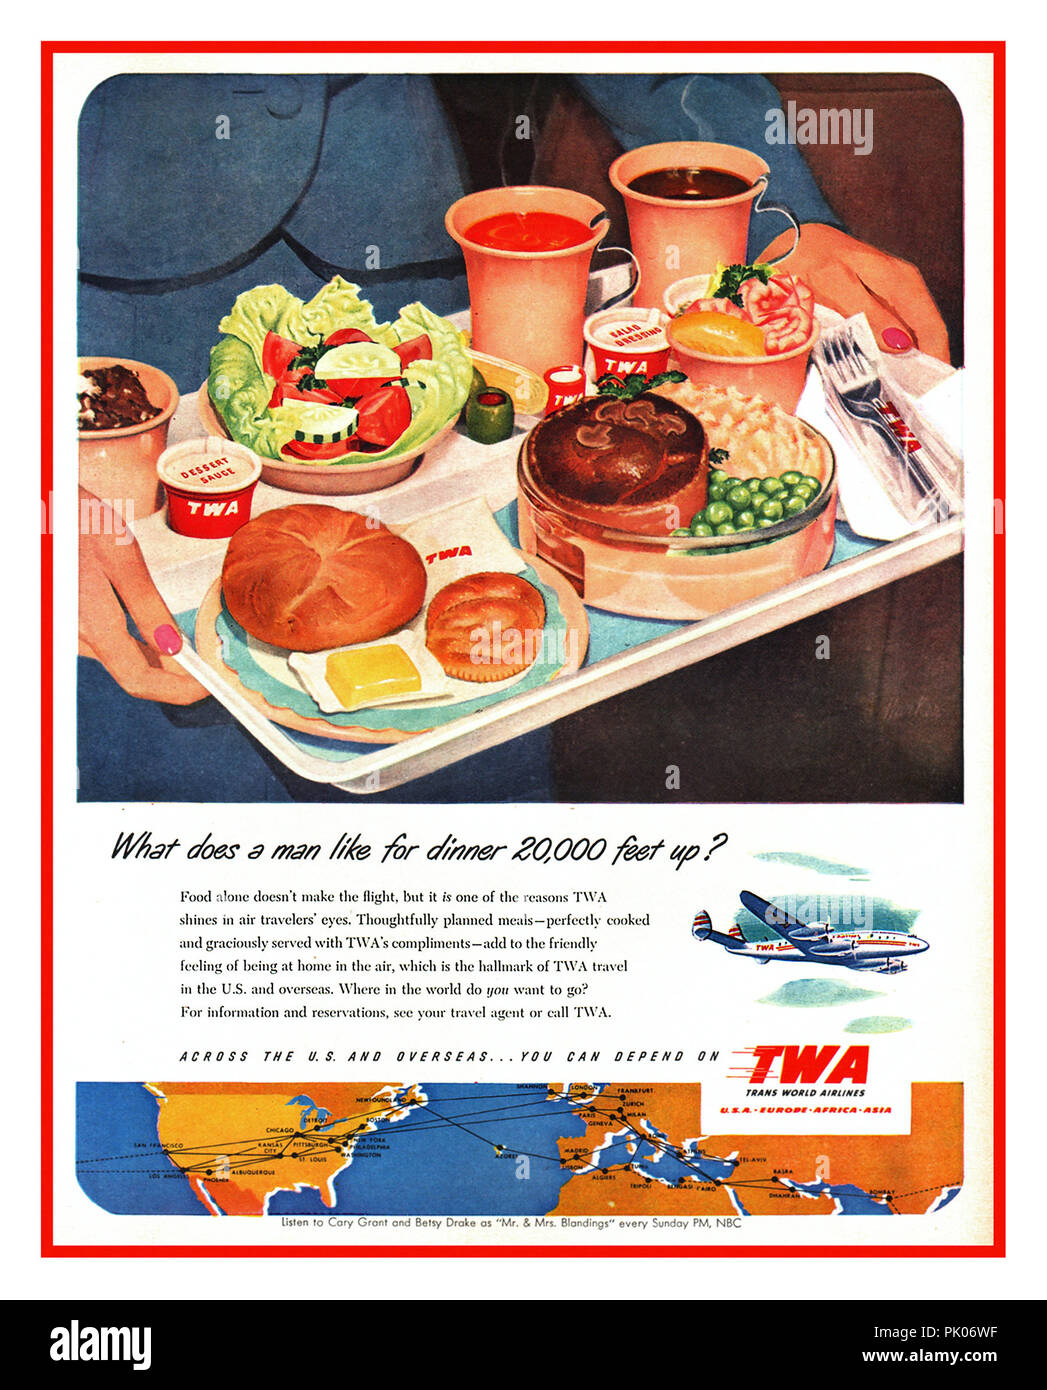 Vintage Airline Food Werbung für TWA Mahlzeiten Aviation Airline catering In-flight 1951 Mahlzeit essen Fach "Was macht ein Mann wie zum Abendessen 20.000 Fuß?" Stockfoto